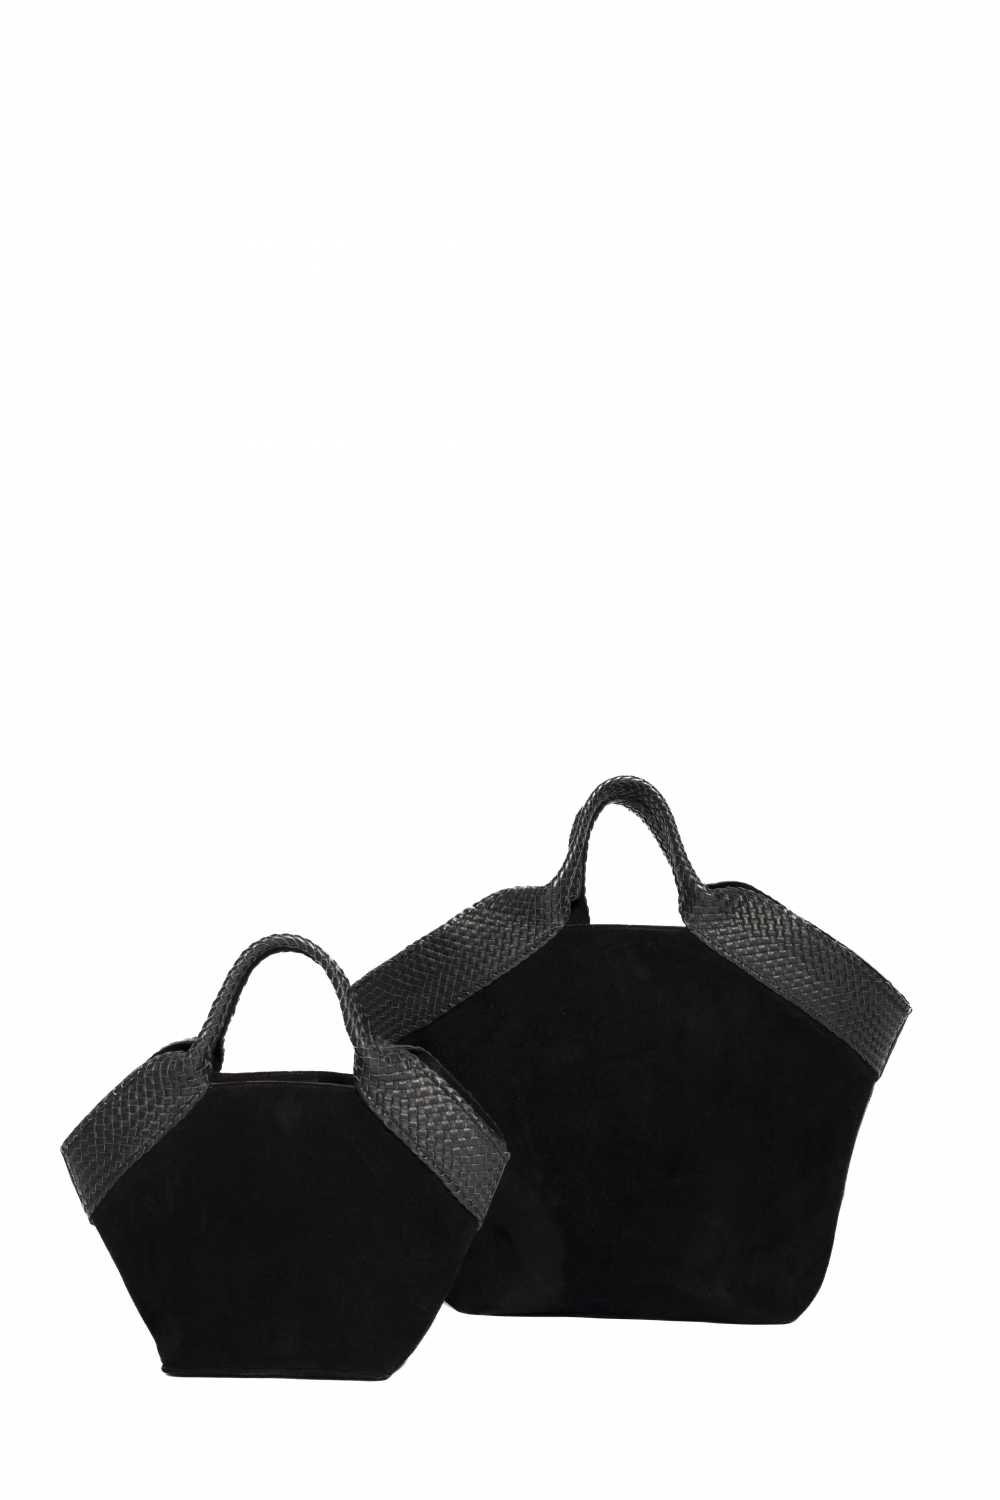 Aura Bag Large Black Suede